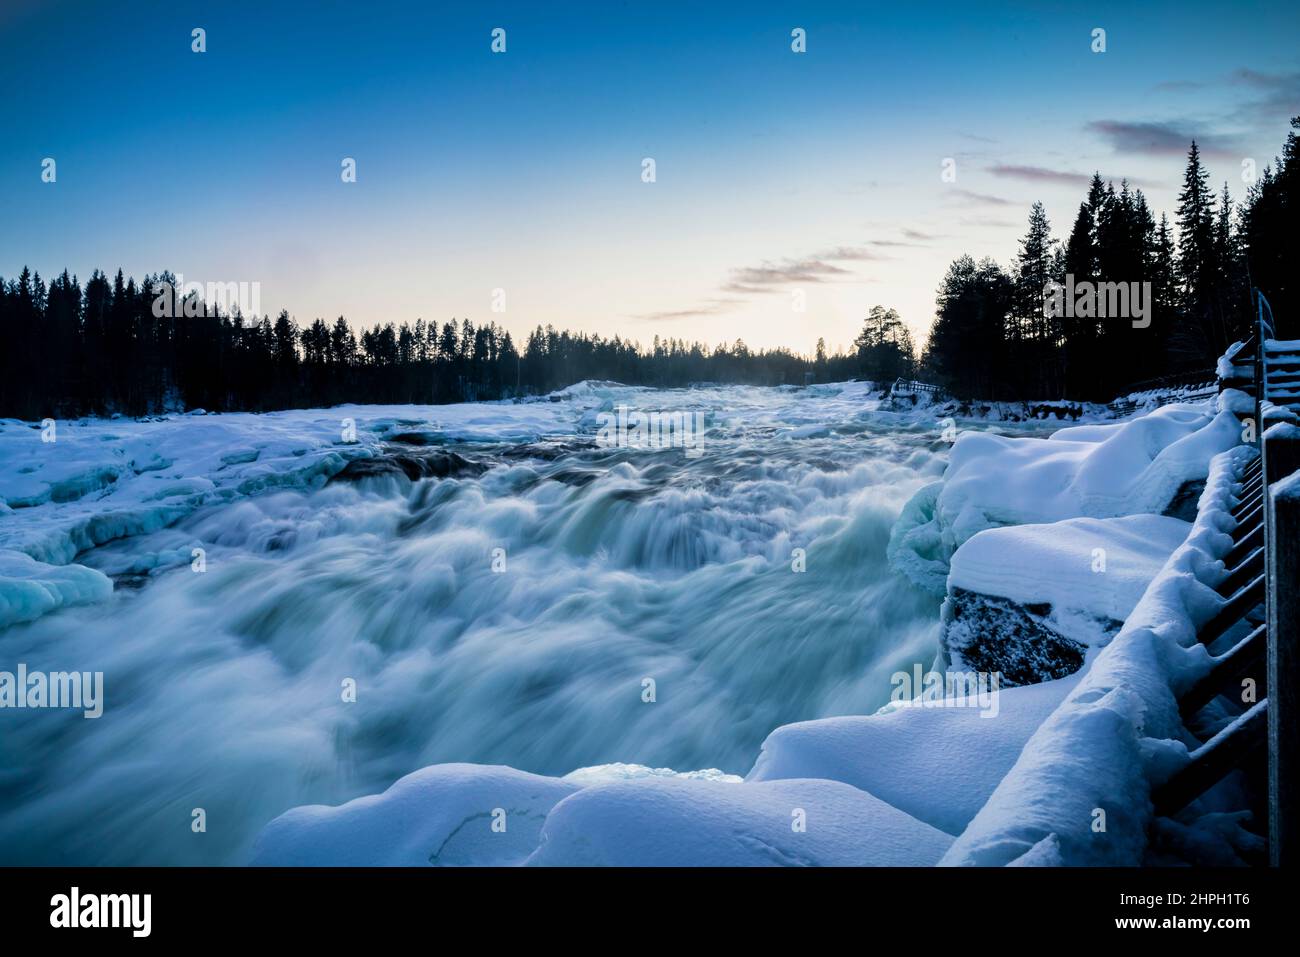 Wanderung im Weinter durch die Natur mit Blick auf Fluss, Storforsen, Lappland, Schweden Foto Stock